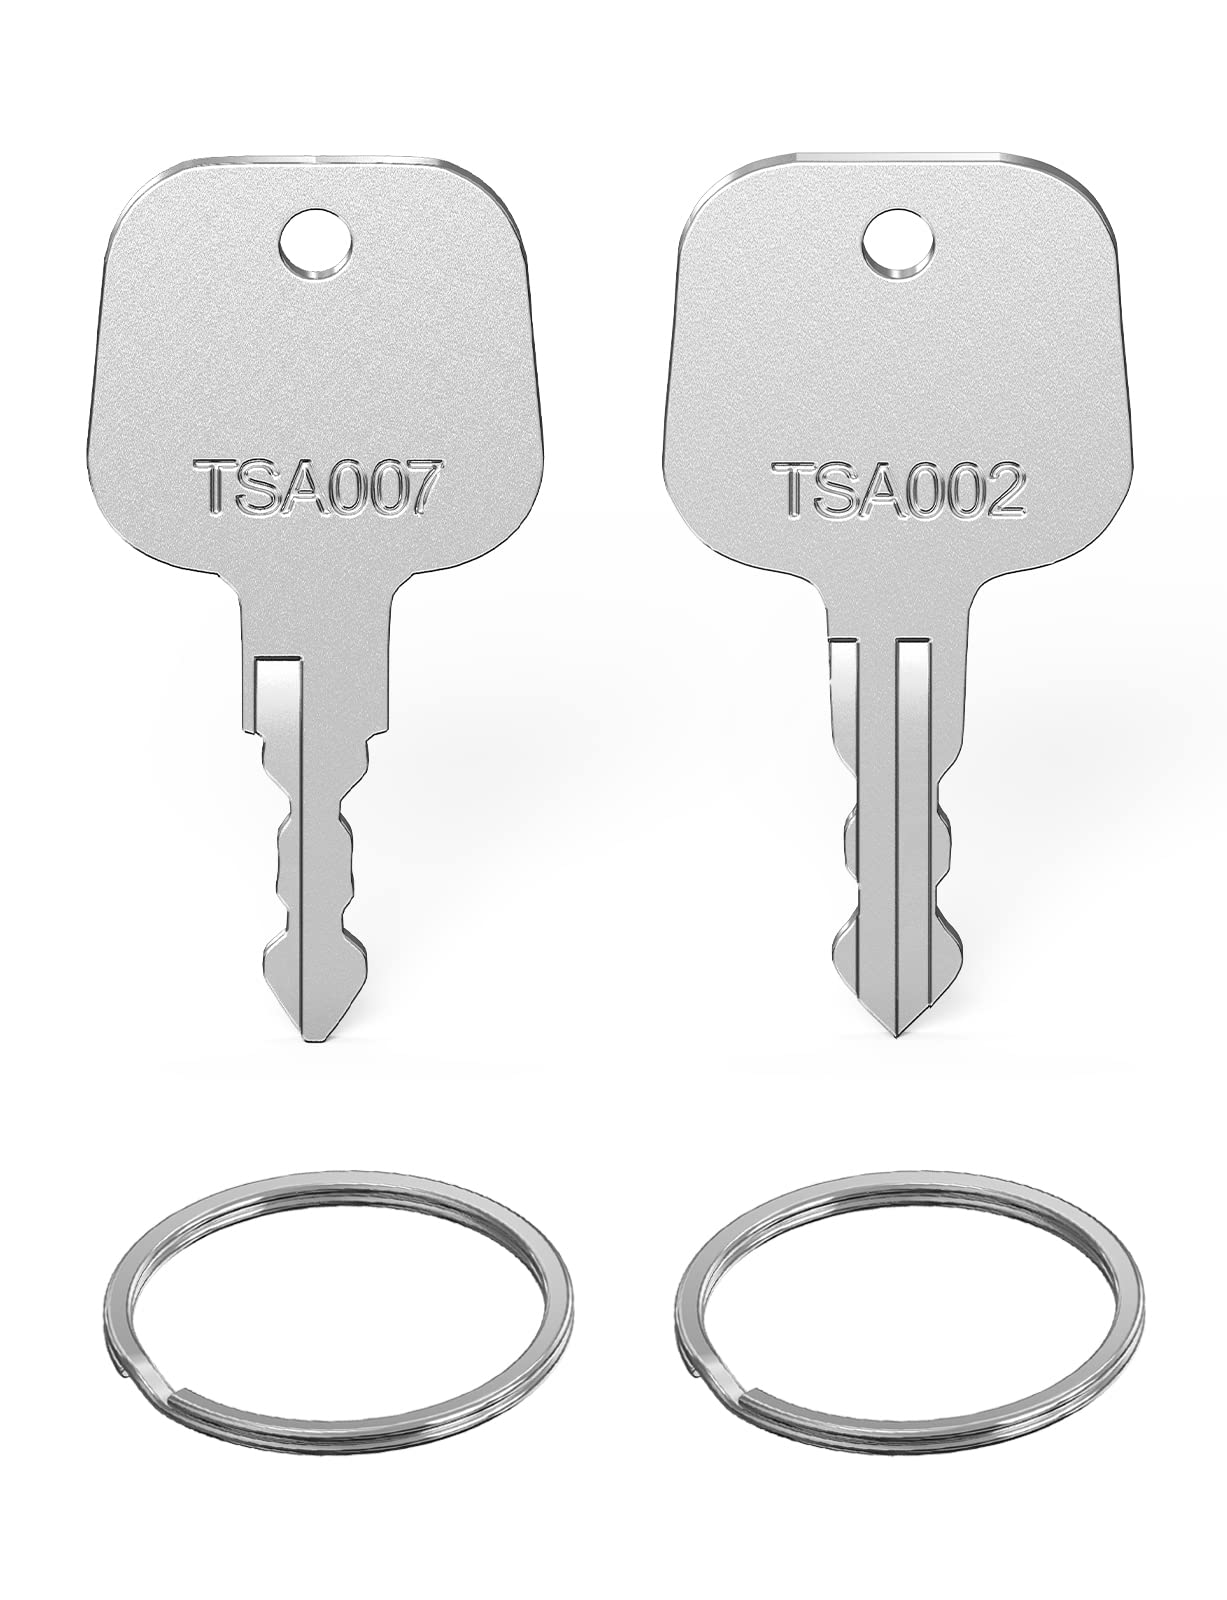 Mellbree TSA 鍵 TSA002 007用のロックキー 鍵 2本セット キーリング付き トラベルバッグ 荷物スーツケース鍵 マスターキー スペアキー TSA002 TSA007鍵対応